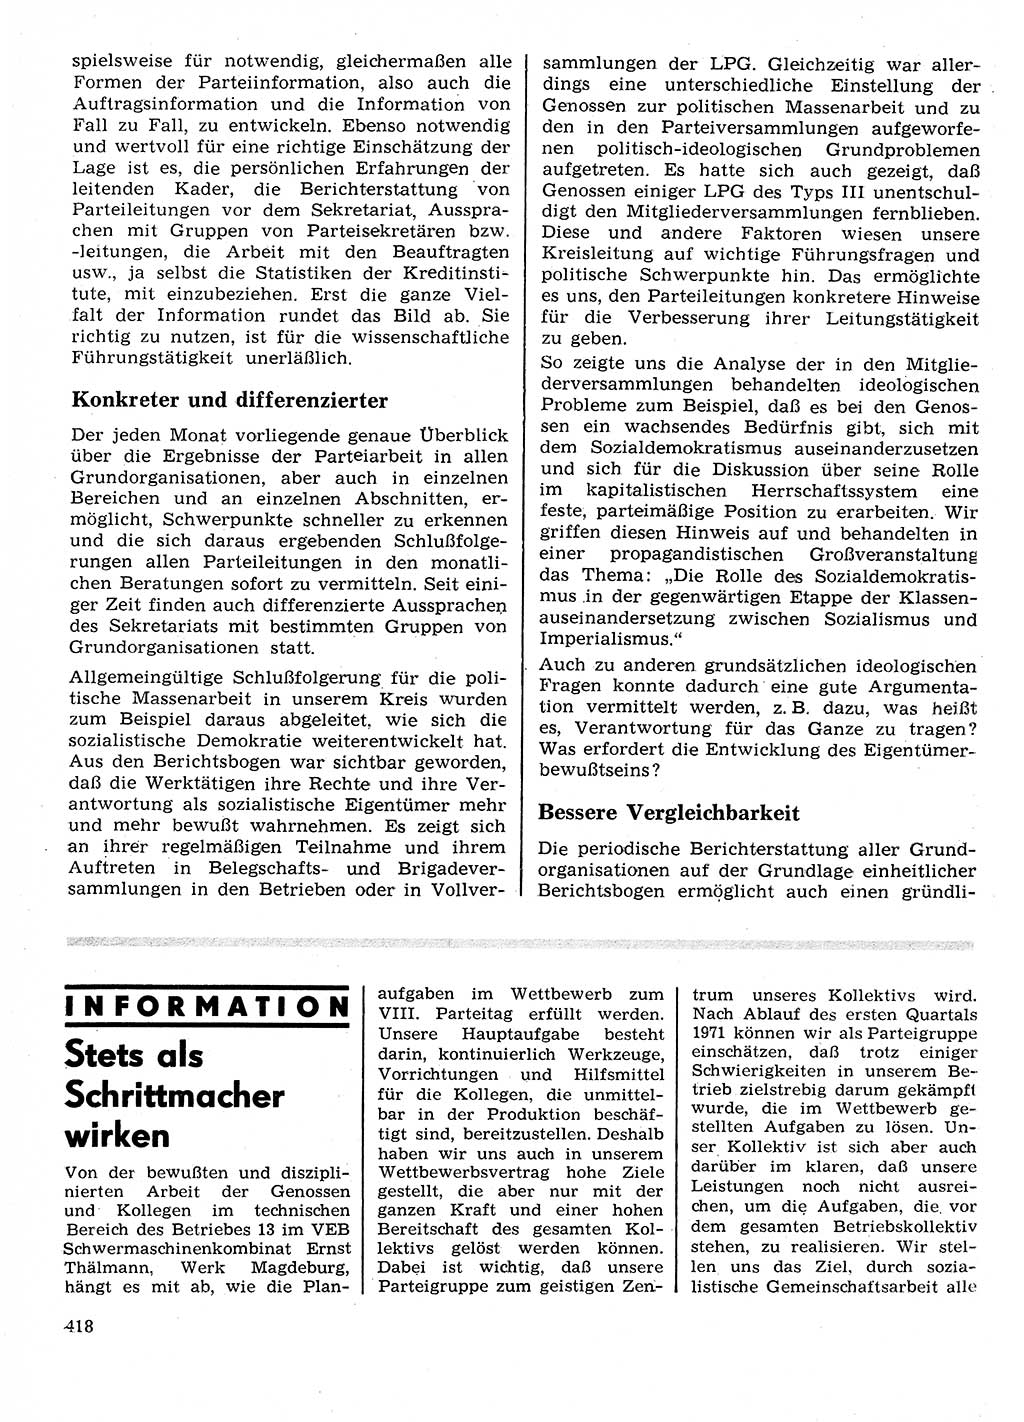 Neuer Weg (NW), Organ des Zentralkomitees (ZK) der SED (Sozialistische Einheitspartei Deutschlands) für Fragen des Parteilebens, 26. Jahrgang [Deutsche Demokratische Republik (DDR)] 1971, Seite 418 (NW ZK SED DDR 1971, S. 418)